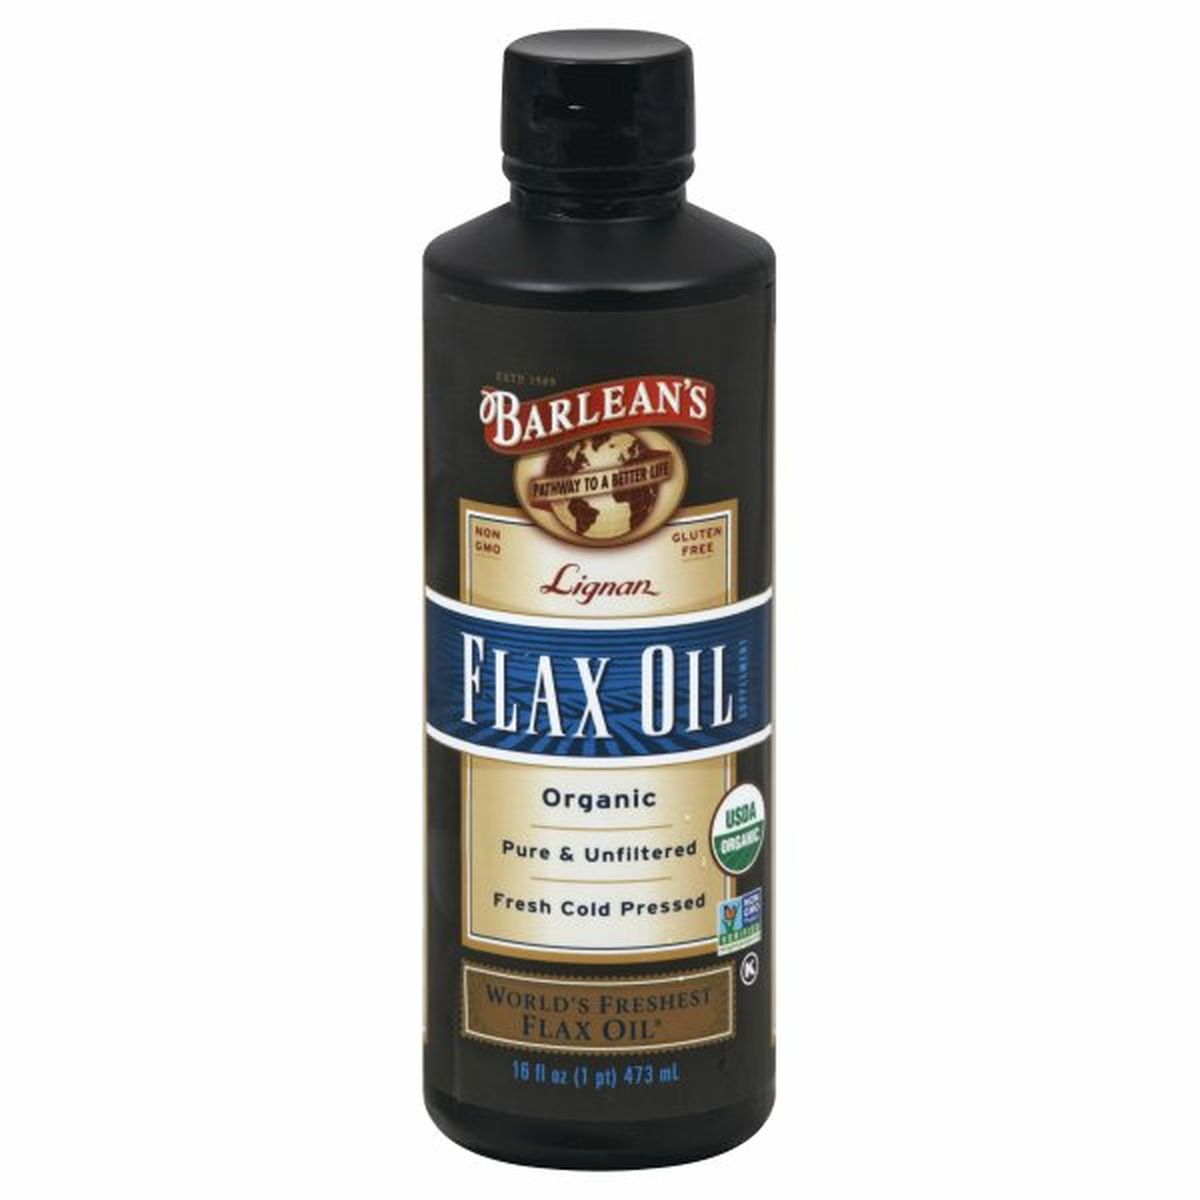 Calories in Barlean's Flax Oil, Organic, Lignan